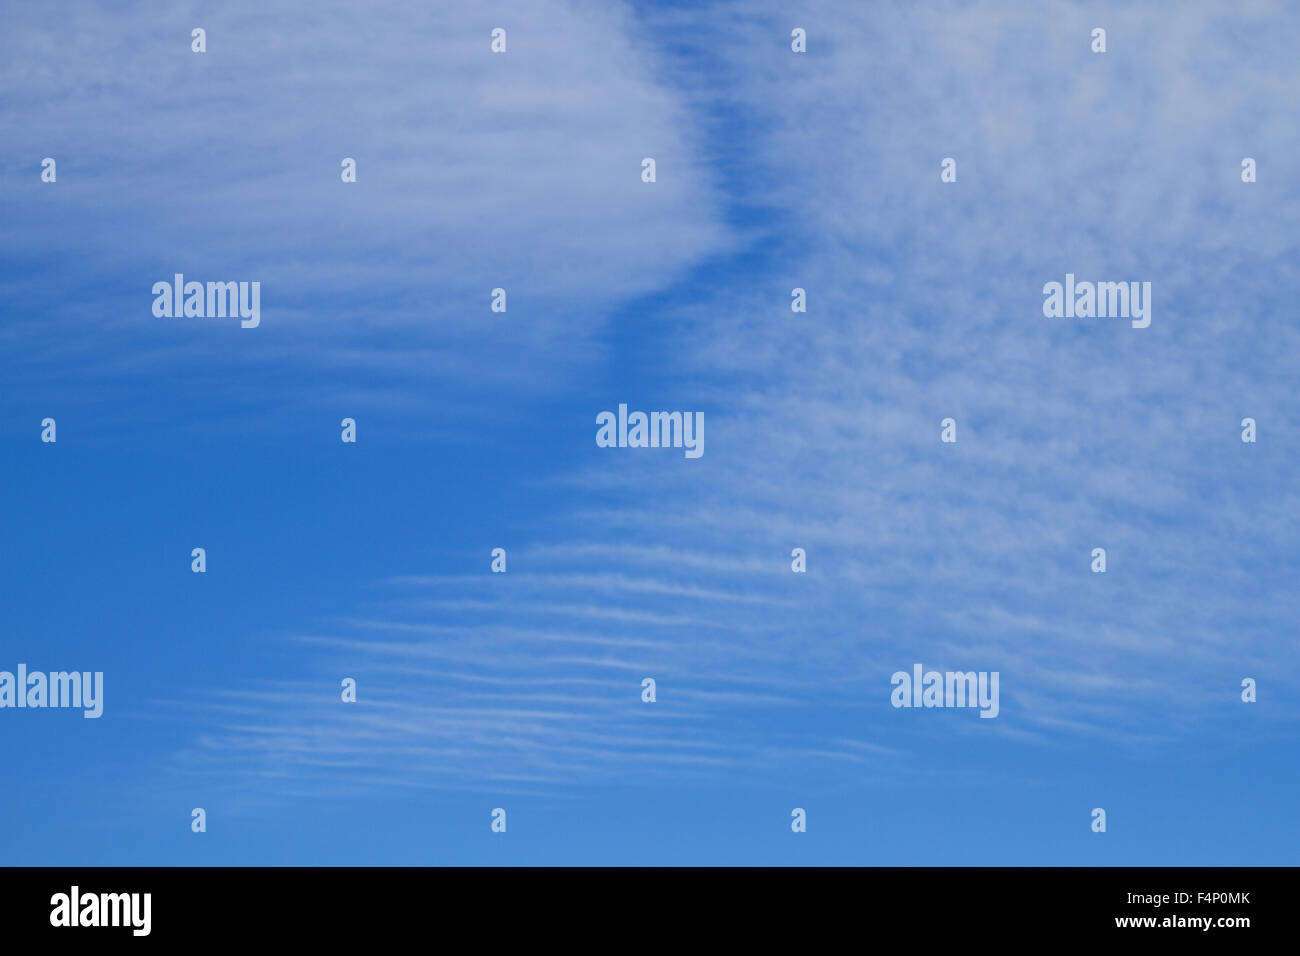 De Tayside, Dundee, Escocia, Reino Unido, 21 de octubre de 2015. El clima del Reino Unido: la cálida y soleada tarde de otoño en Dundee con temperaturas mínimas de 16°C. Otoño glorioso escenas de baja altitud 'Espina de Pez' o 'Mackerel' nubes formando patrones inusuales en el cielo de la ciudad de Dundee. © Dundee Fotografías / Alamy Live News. Foto de stock